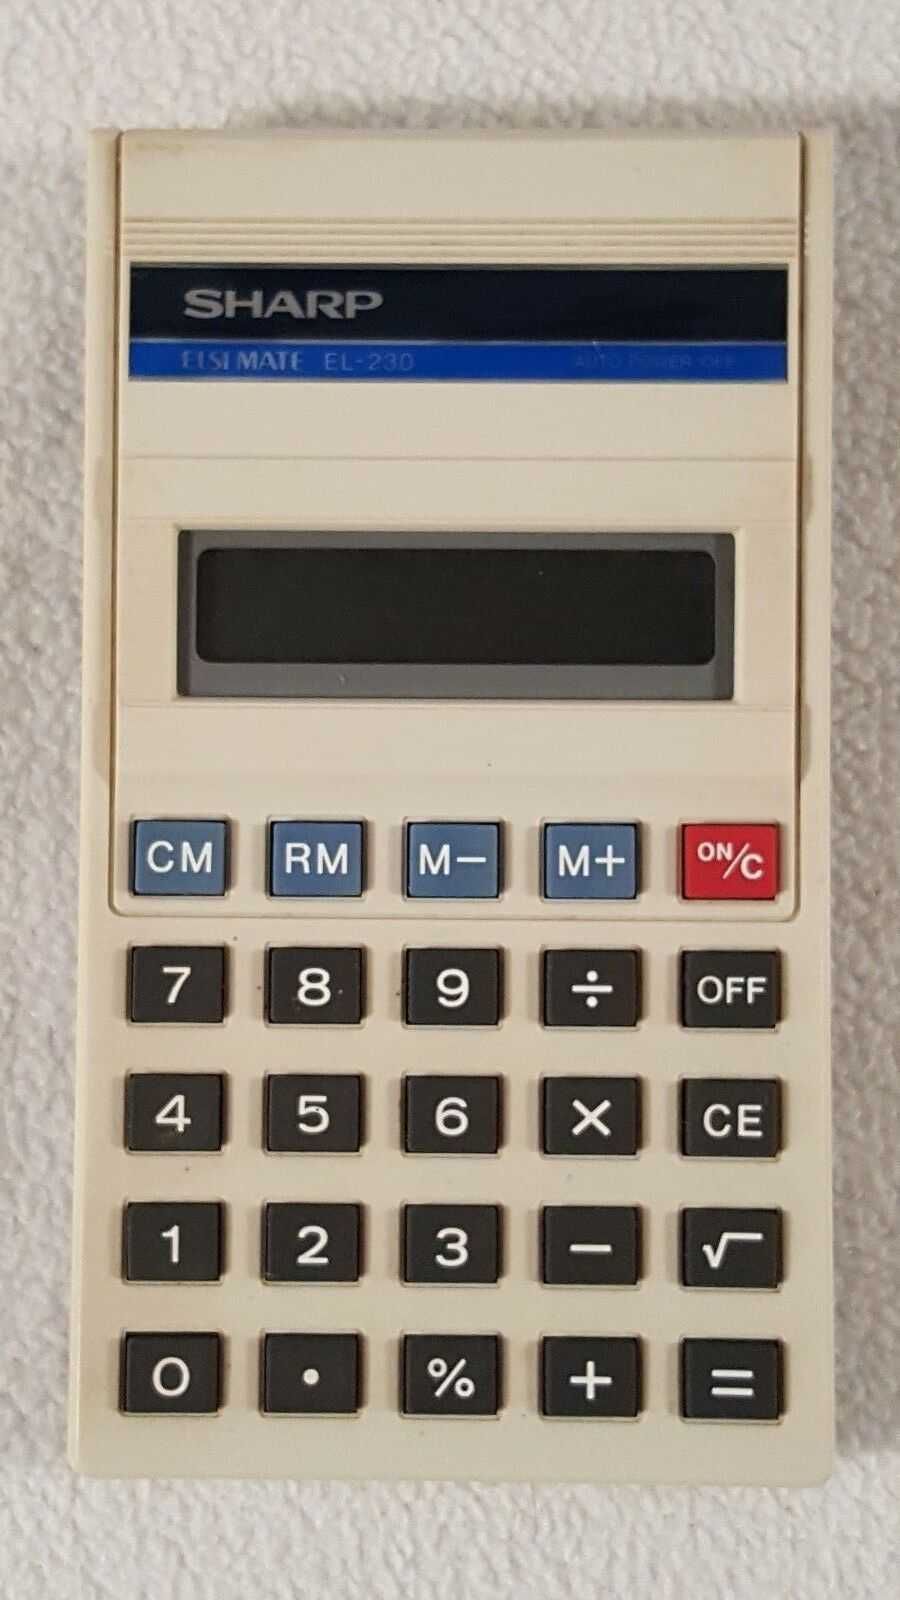 Vintage Sharp electronic calculator Elsi Mate EL-230. Made in Japan